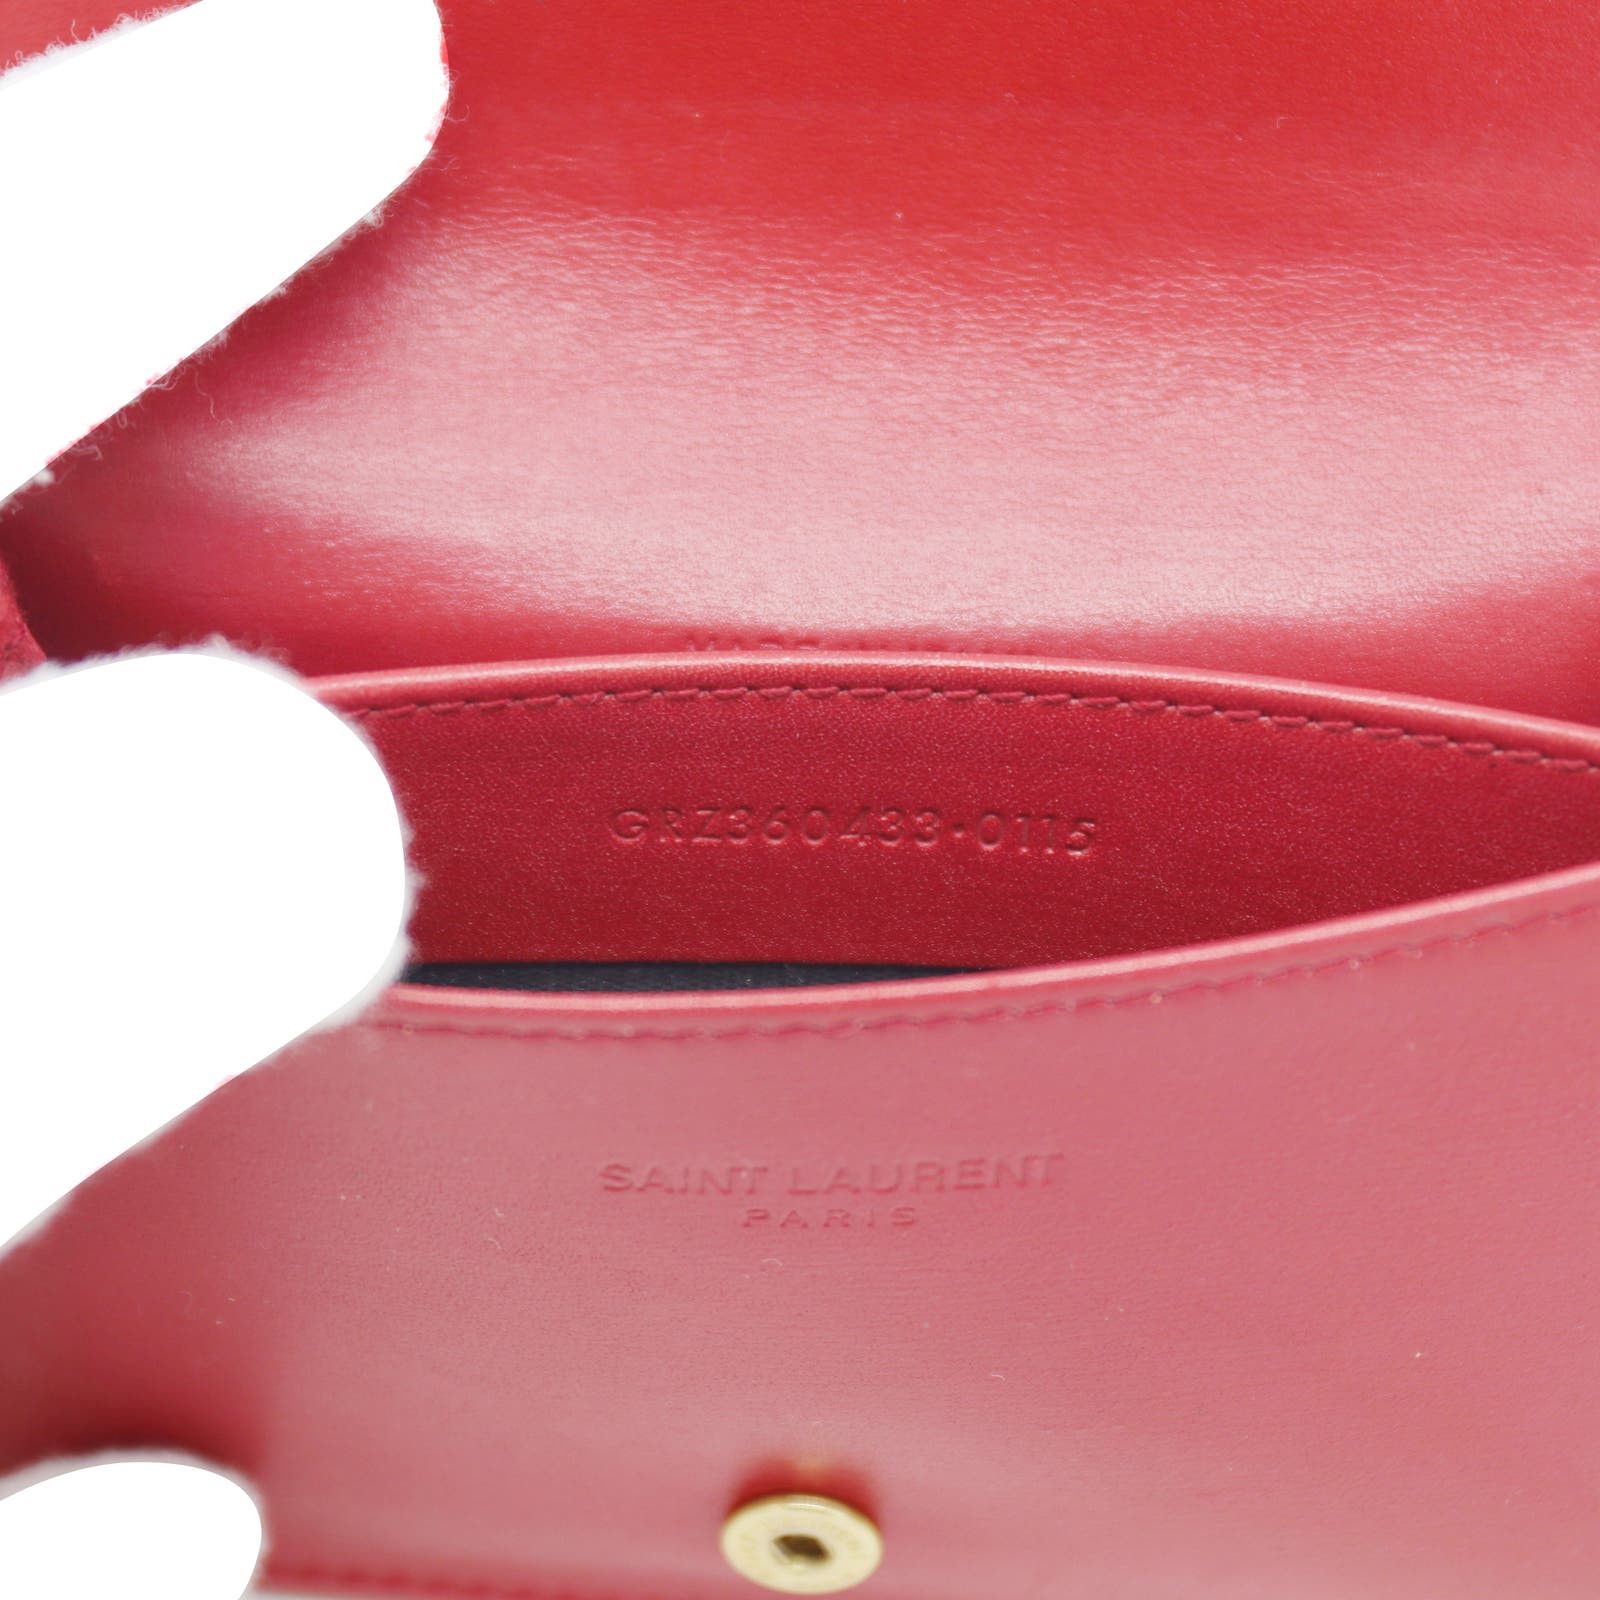 Saint Laurent Paris 🔴 Saint Laurent Paris SLP Card Holder - Poppy Red Leather Size ONE SIZE - 6 Preview